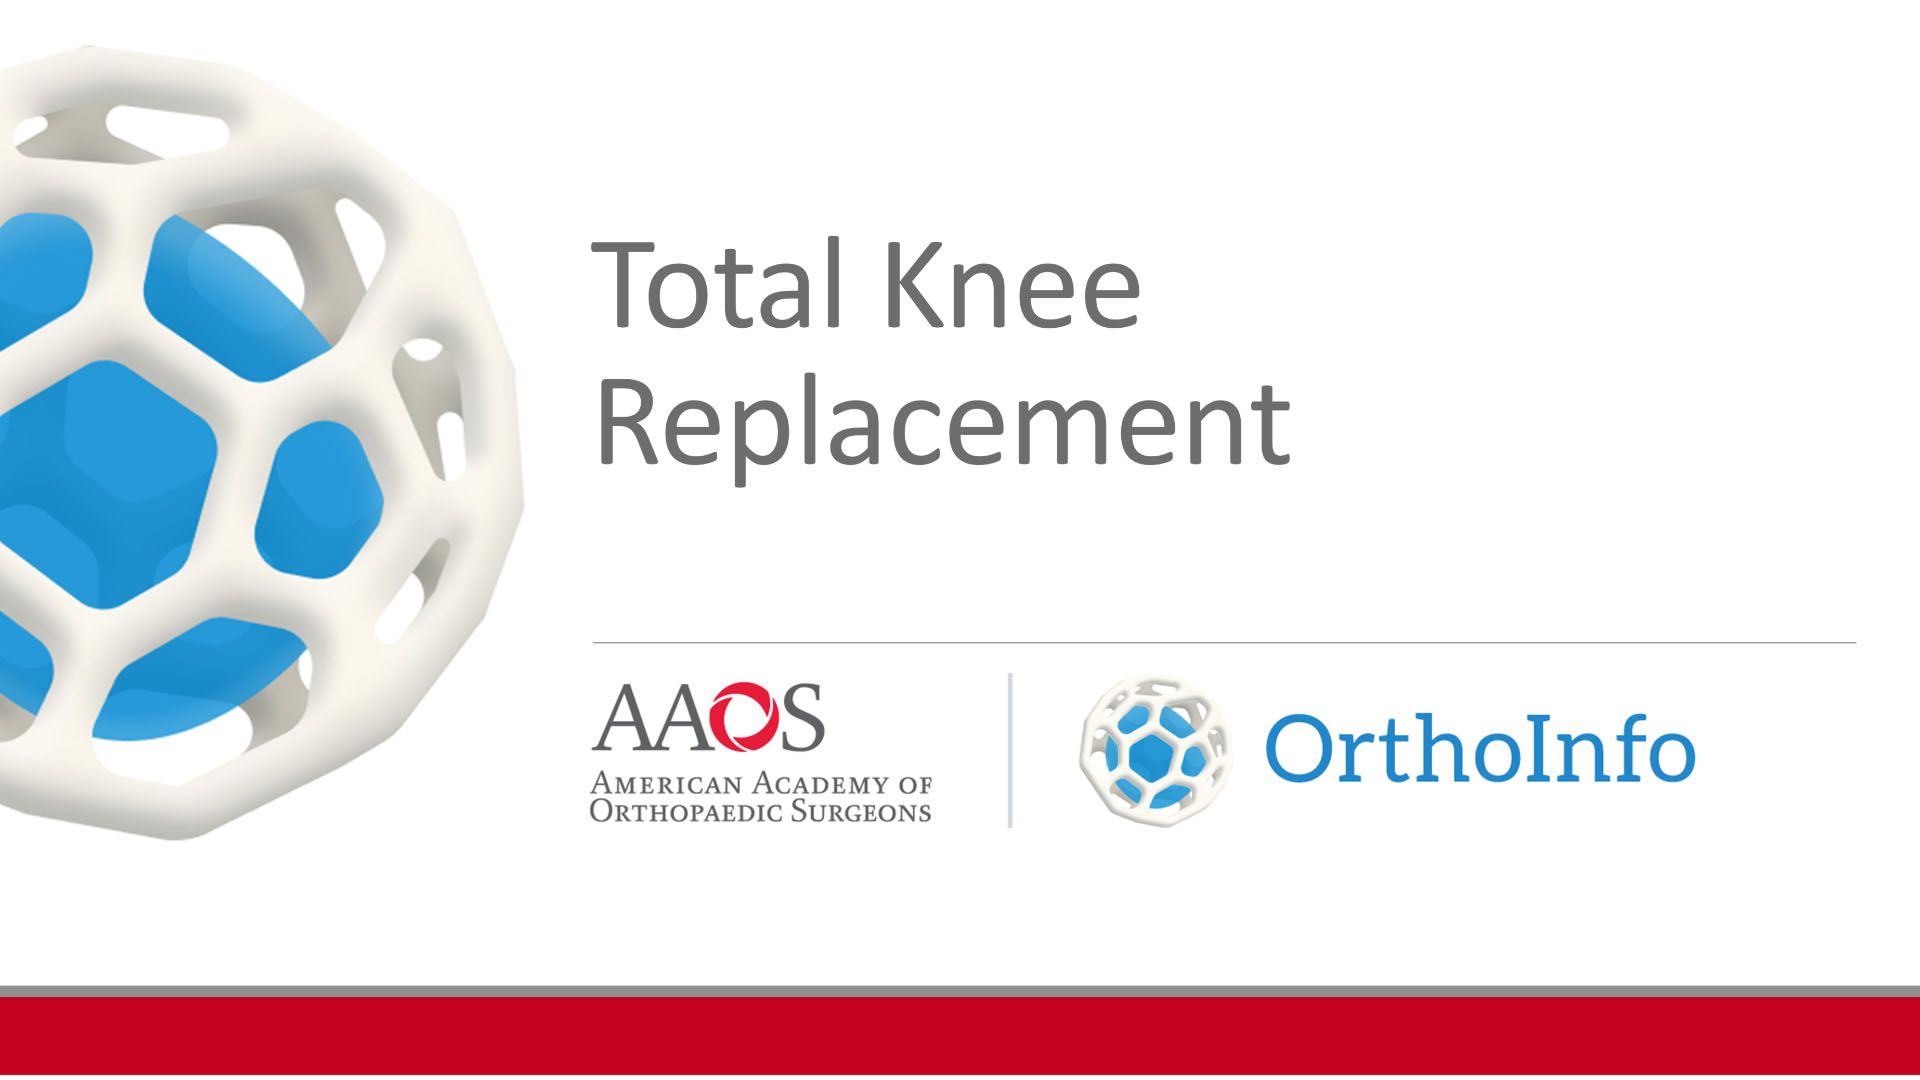 total knee replacement procedure